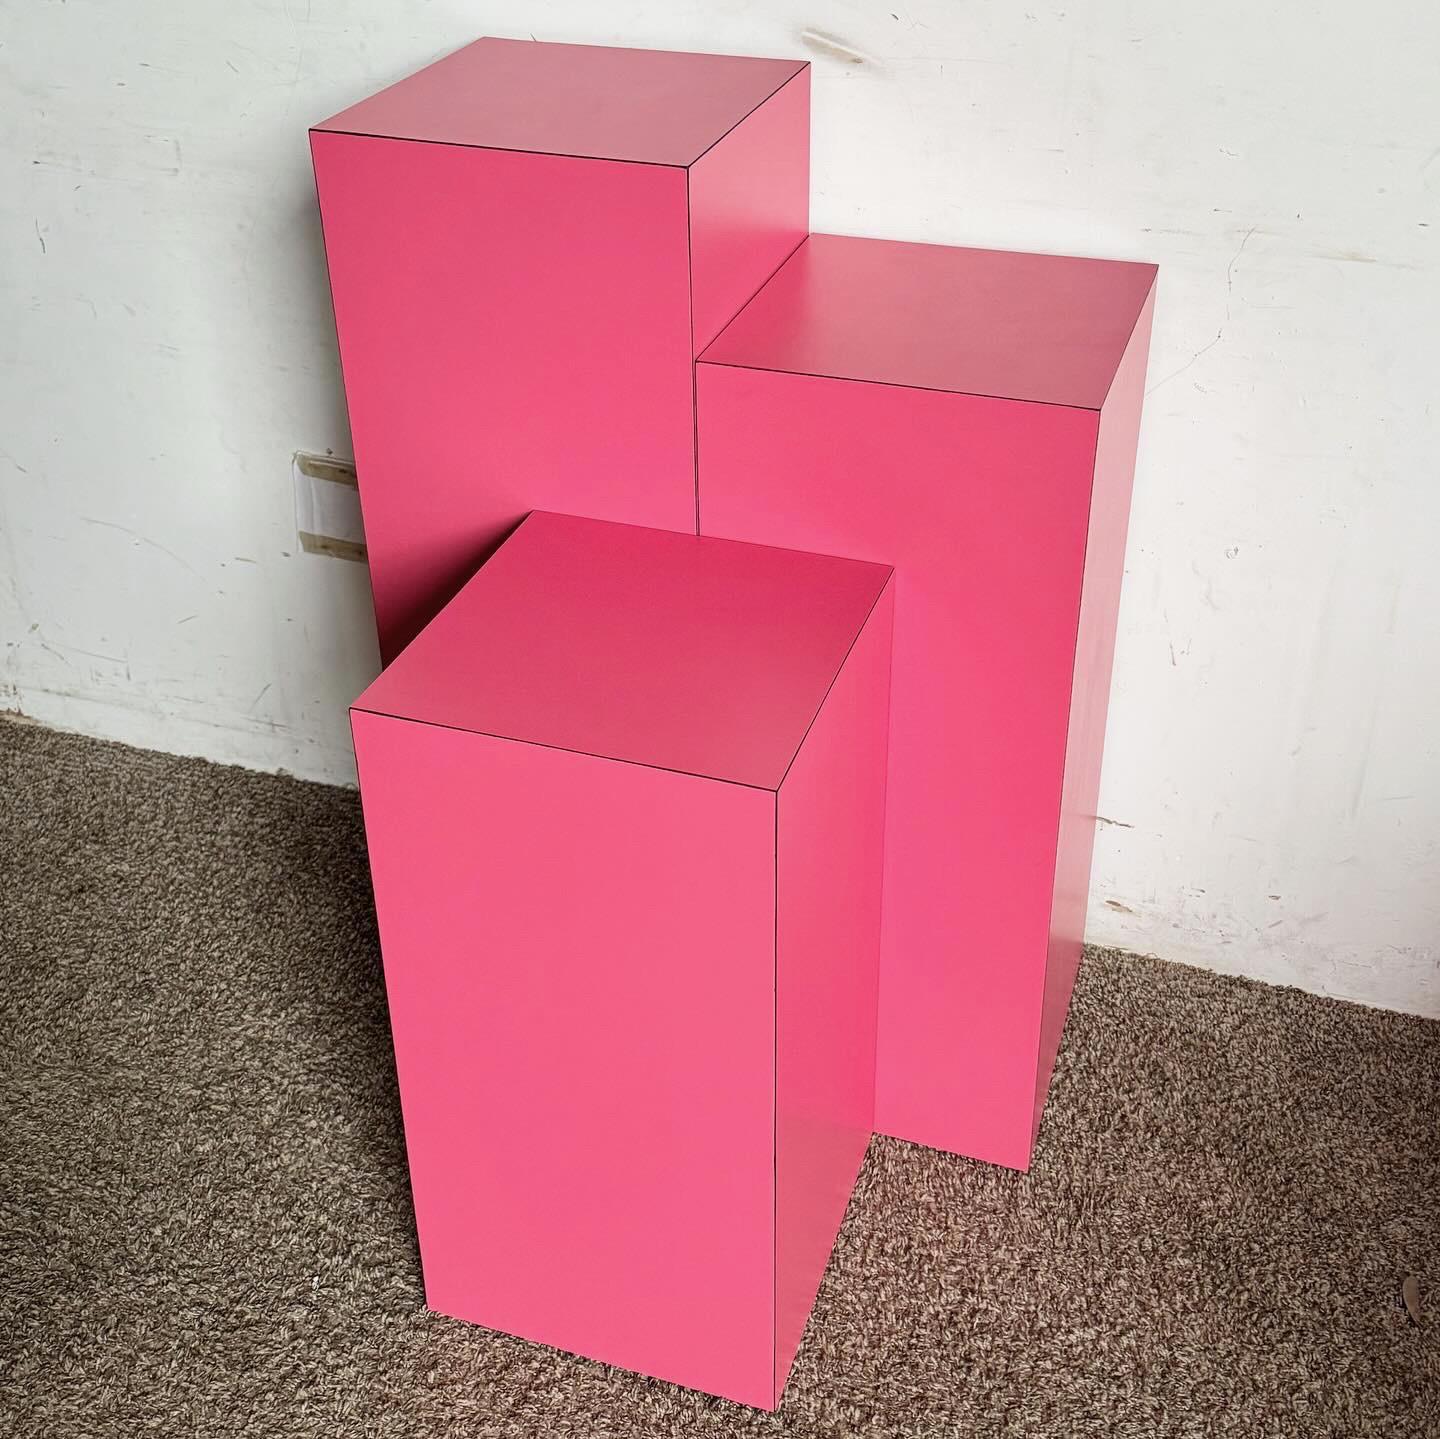 Erhellen Sie Ihr Zuhause mit dem Postmodern Hot Pink Matte Laminate Ascending Rectangular Prism Pedestal Set Tables. Dieses Dreierset in leuchtendem Pink verleiht jedem Raum eine verspielte Note. Mit ansteigenden Höhen von 36,25'Äù, 30,25'Äù und